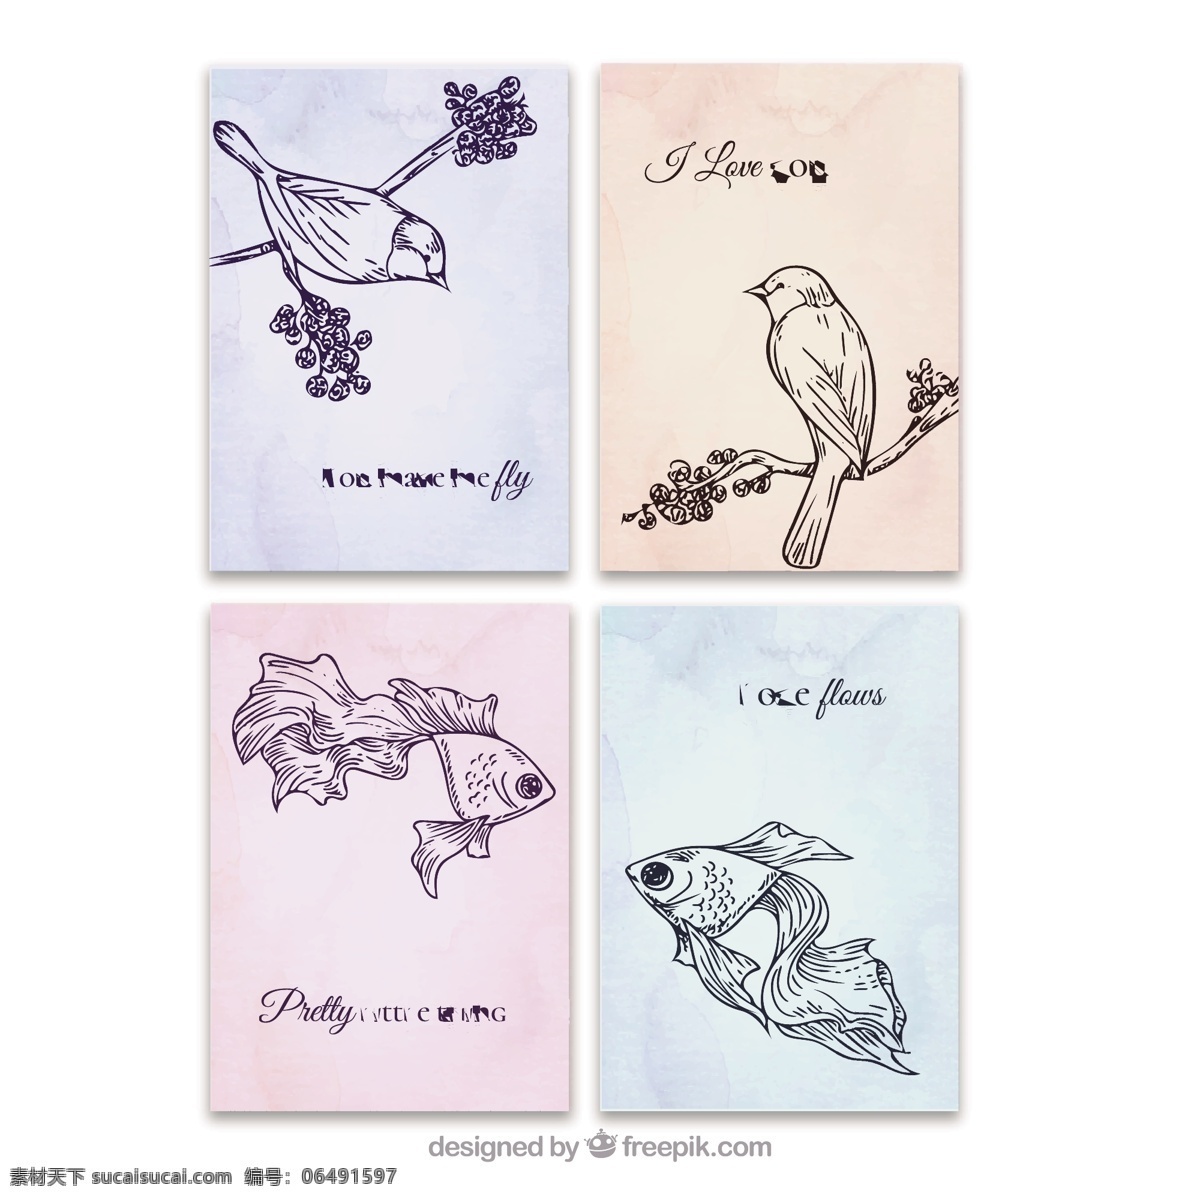 手 画 动物 爱 牌 集 心 卡片 手画 可爱 鸟类 庆典 情侣 爱鸟 庆祝 美丽 可爱的动物 浪漫 轮廓 集合 爱对 白色